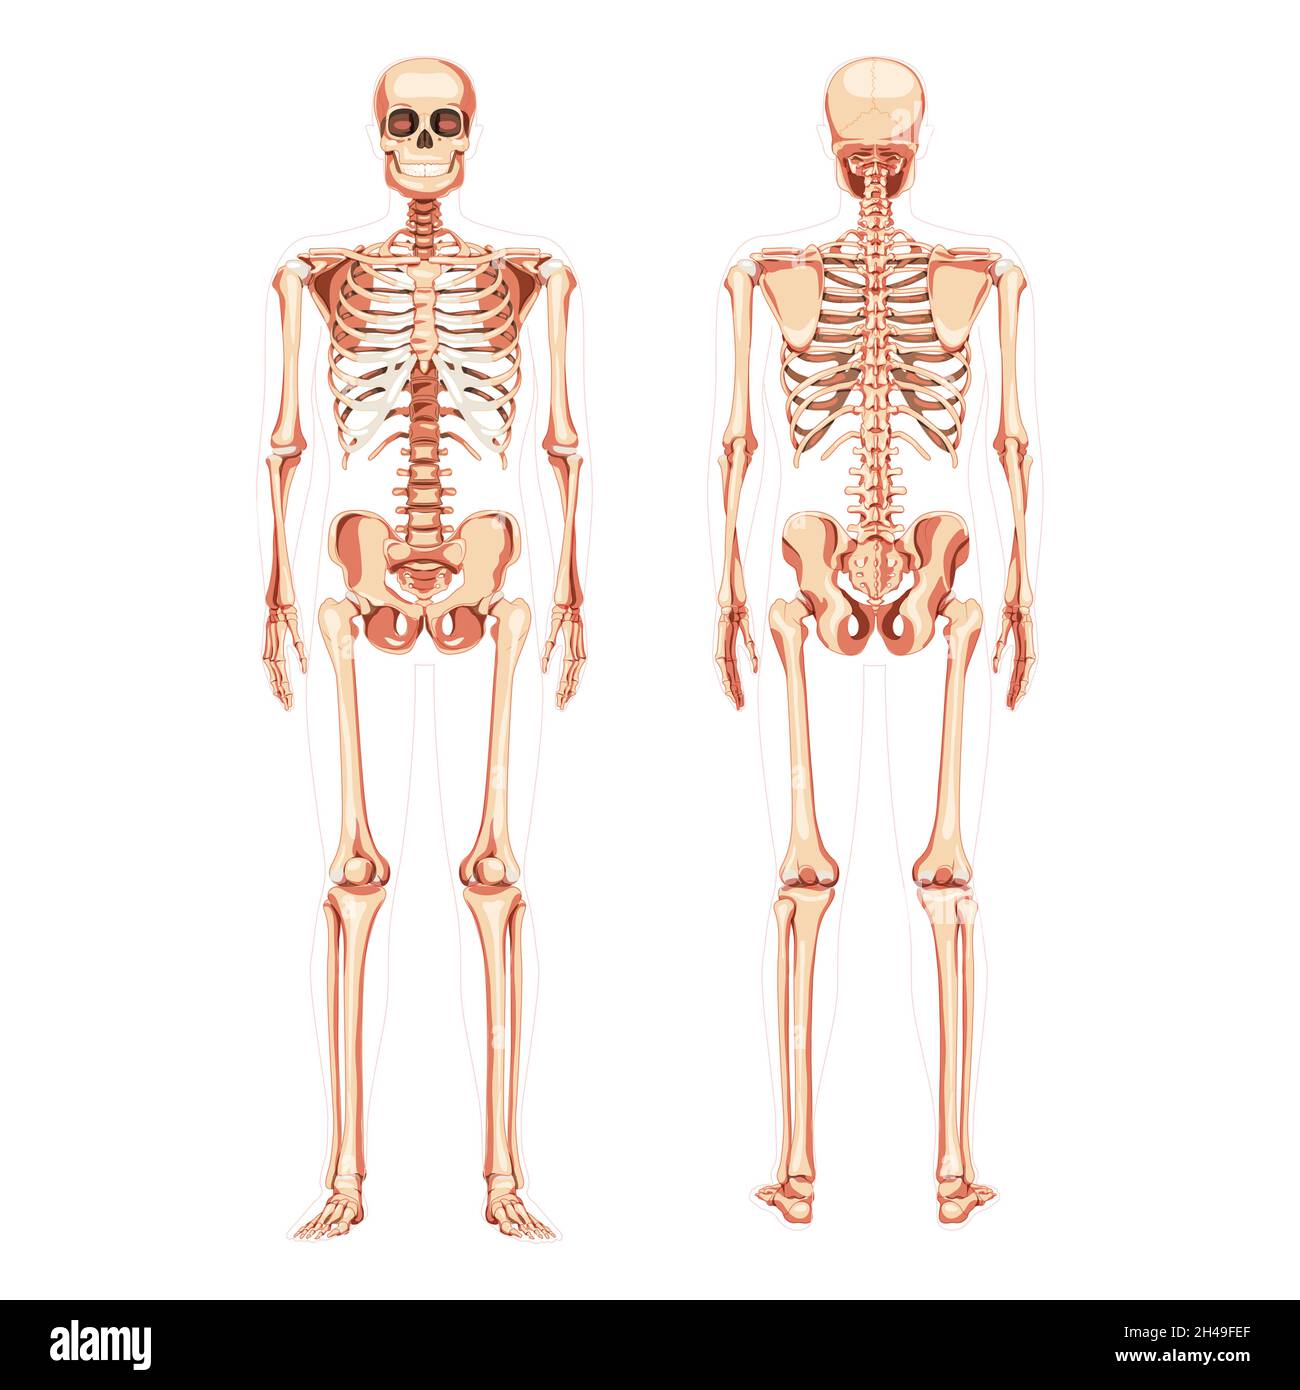 Squelette diagramme humain vue de face arrière réaliste.Jeu de couleur naturelle plate illustration vectorielle tableau didactique de l'anatomie isolée sur fond blanc bannière d'infographie médicale, rachis du crâne humain Illustration de Vecteur